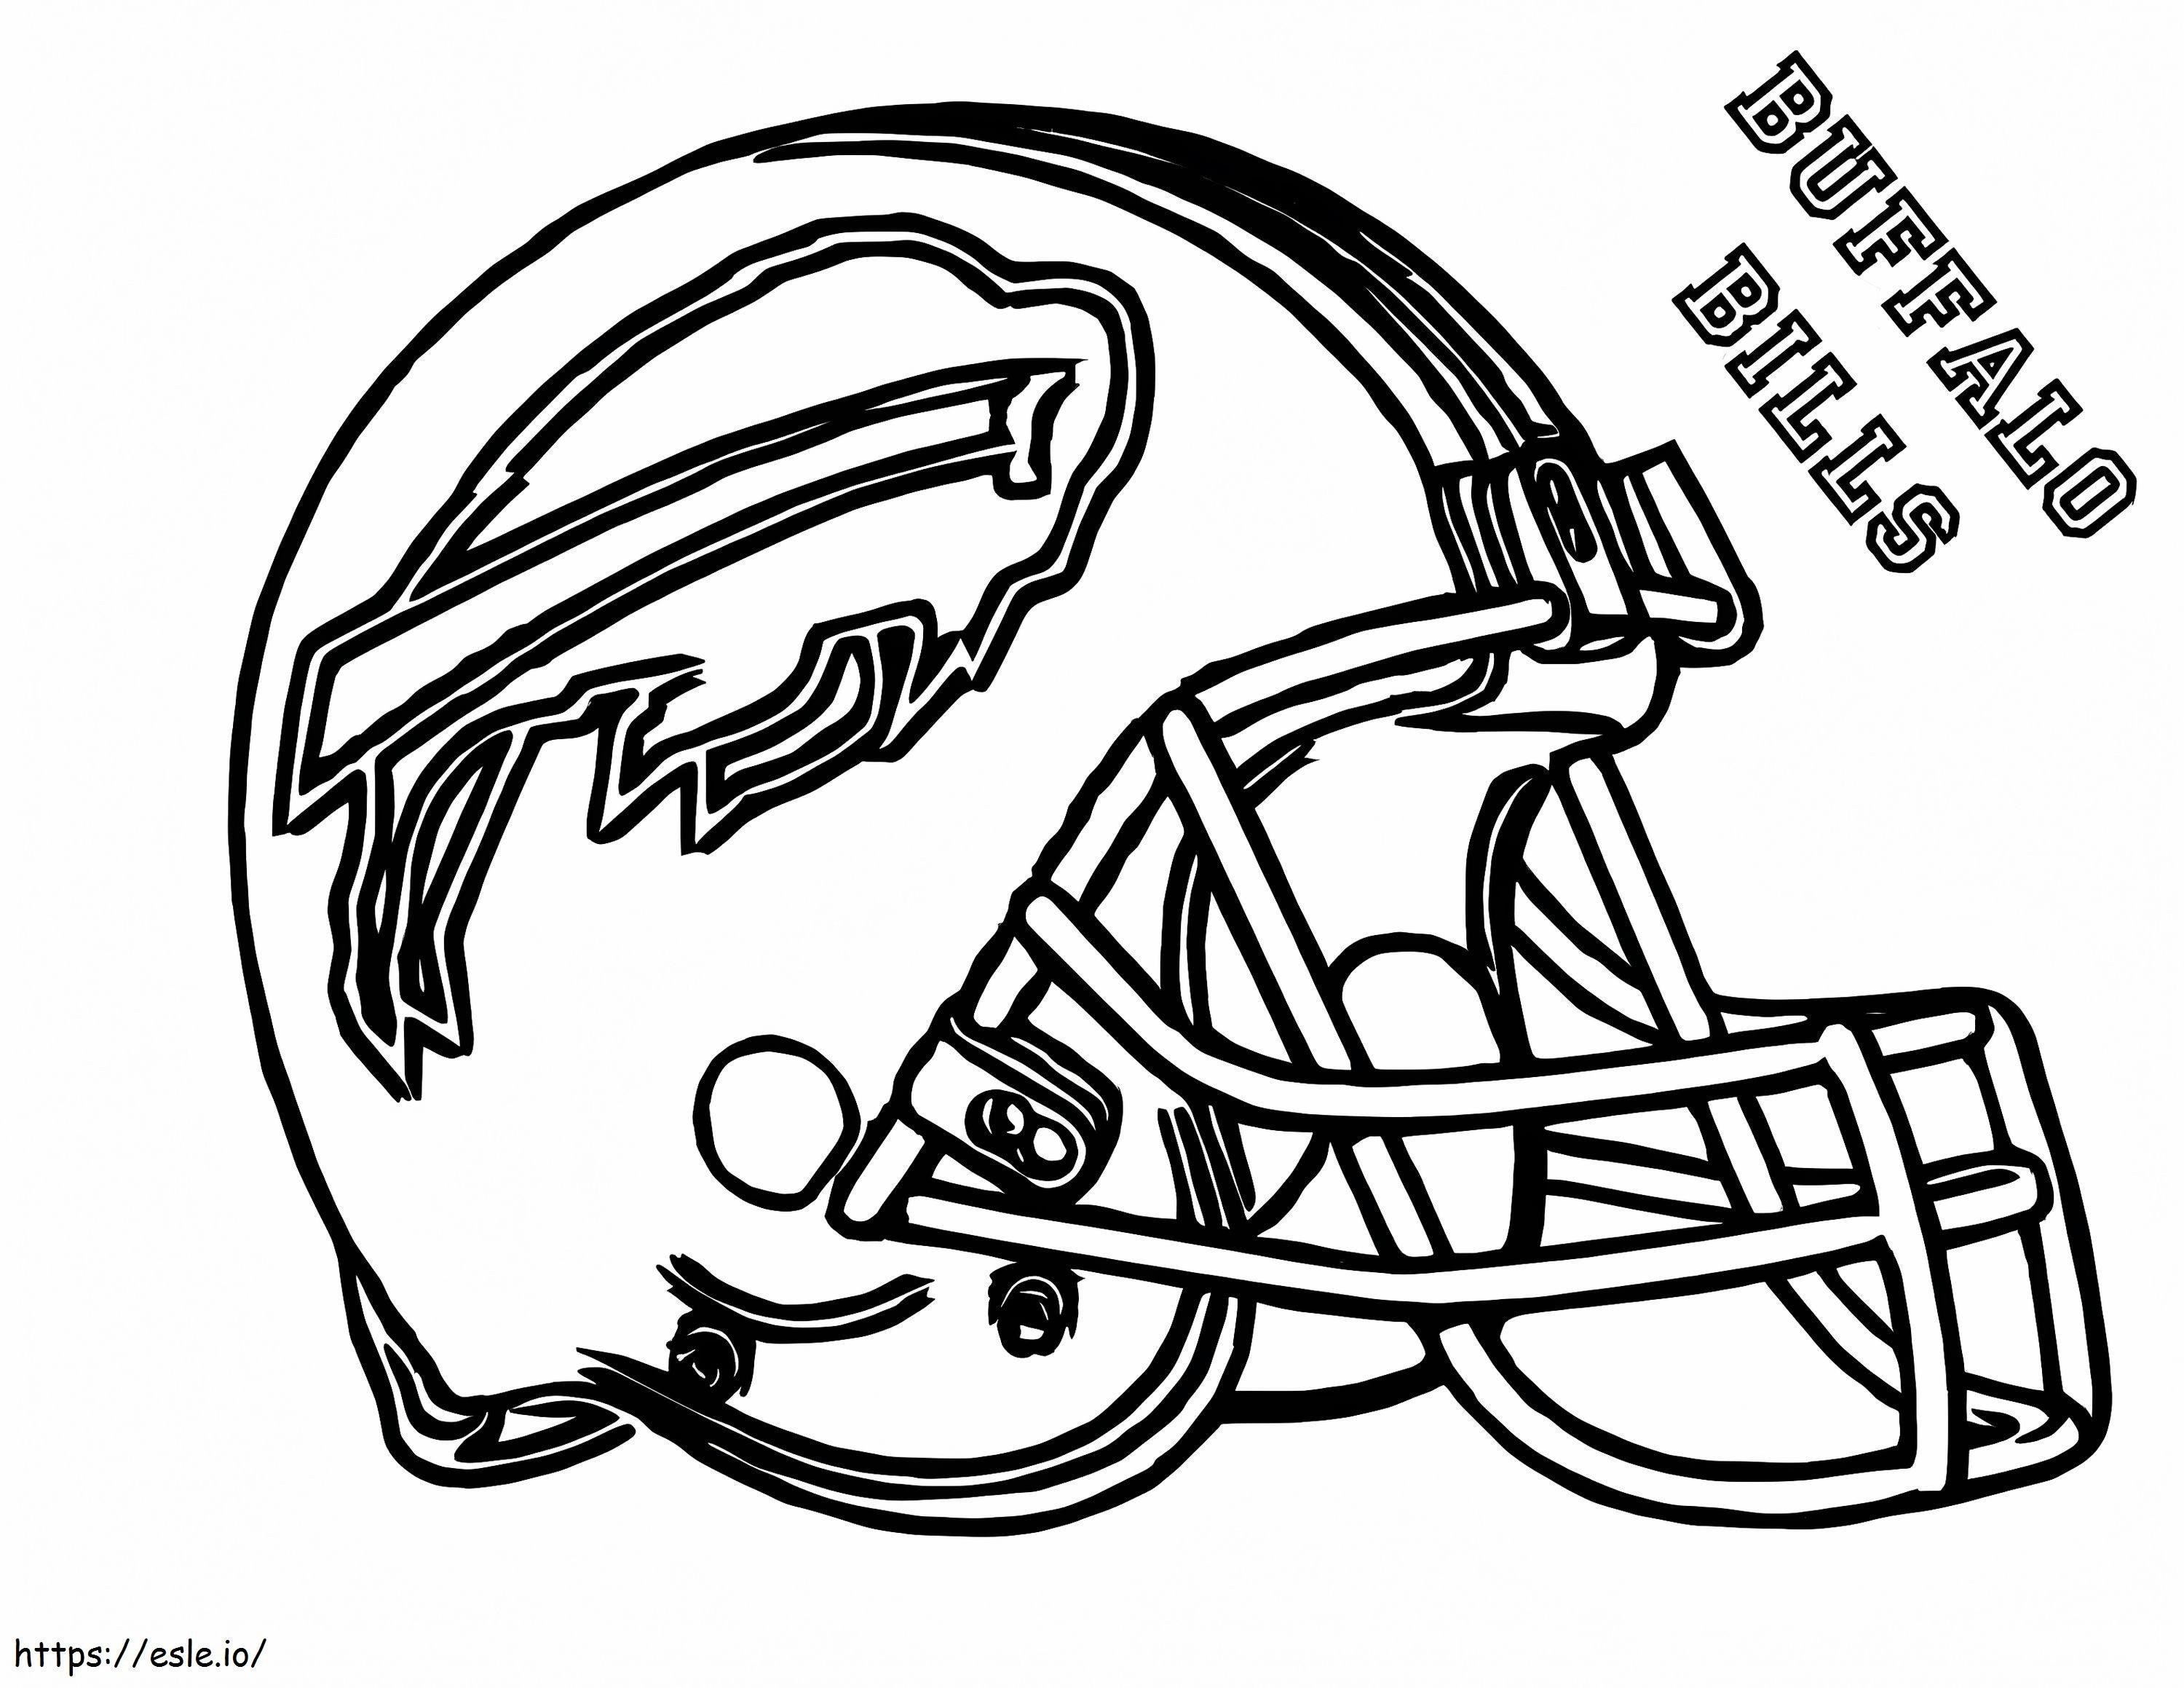 Buffalo Bills coloring page